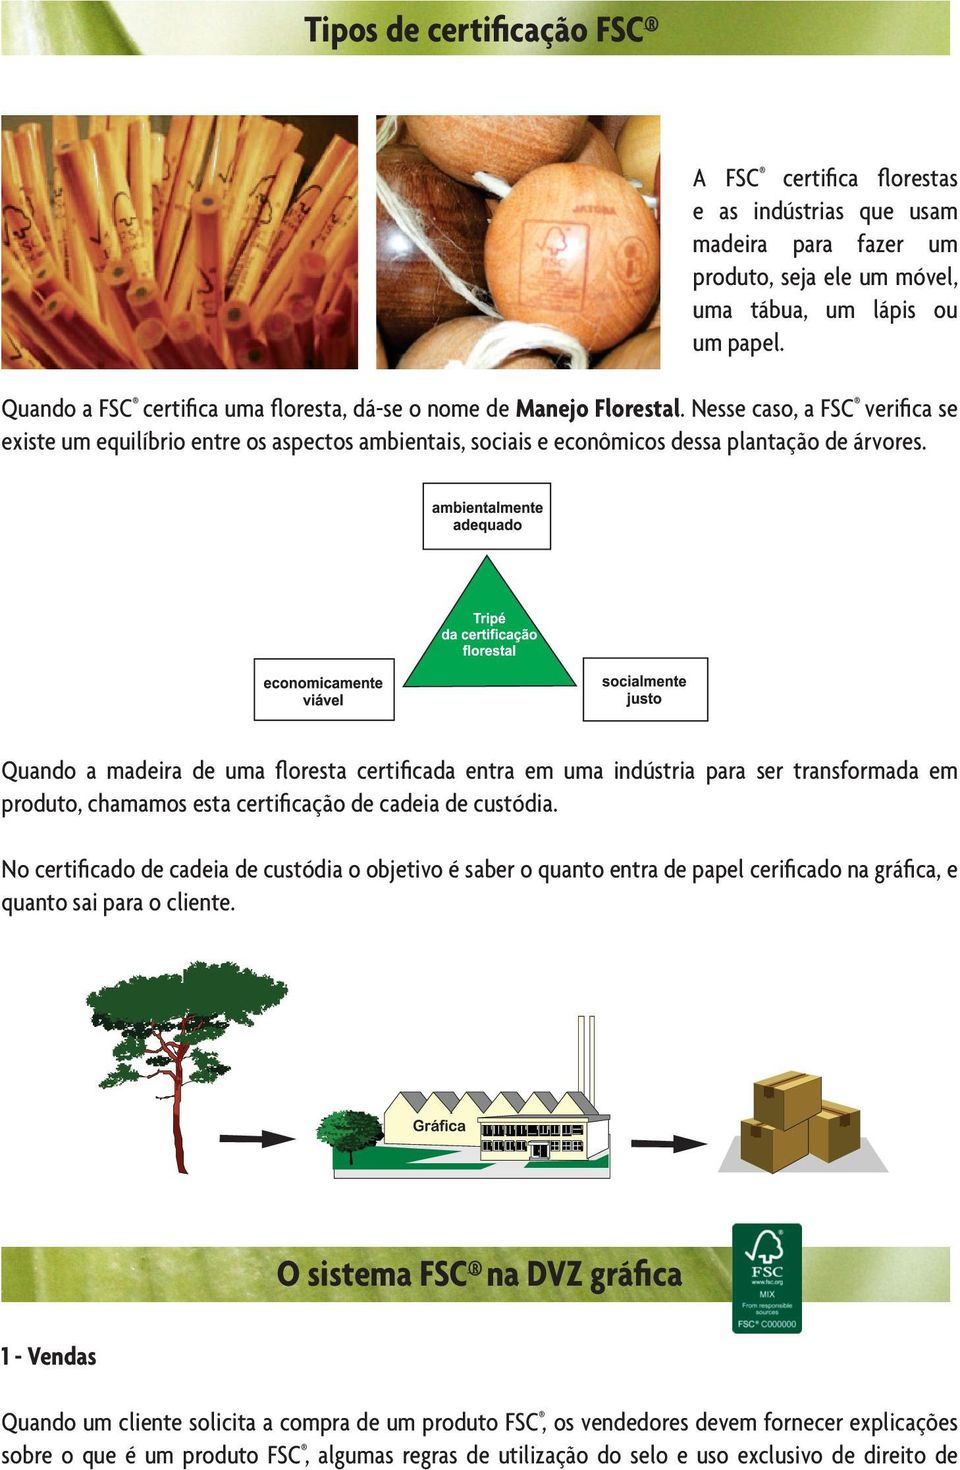 Quando a madeira de uma floresta certificada entra em uma indústria para ser transformada em produto, chamamos esta certificação de cadeia de custódia.